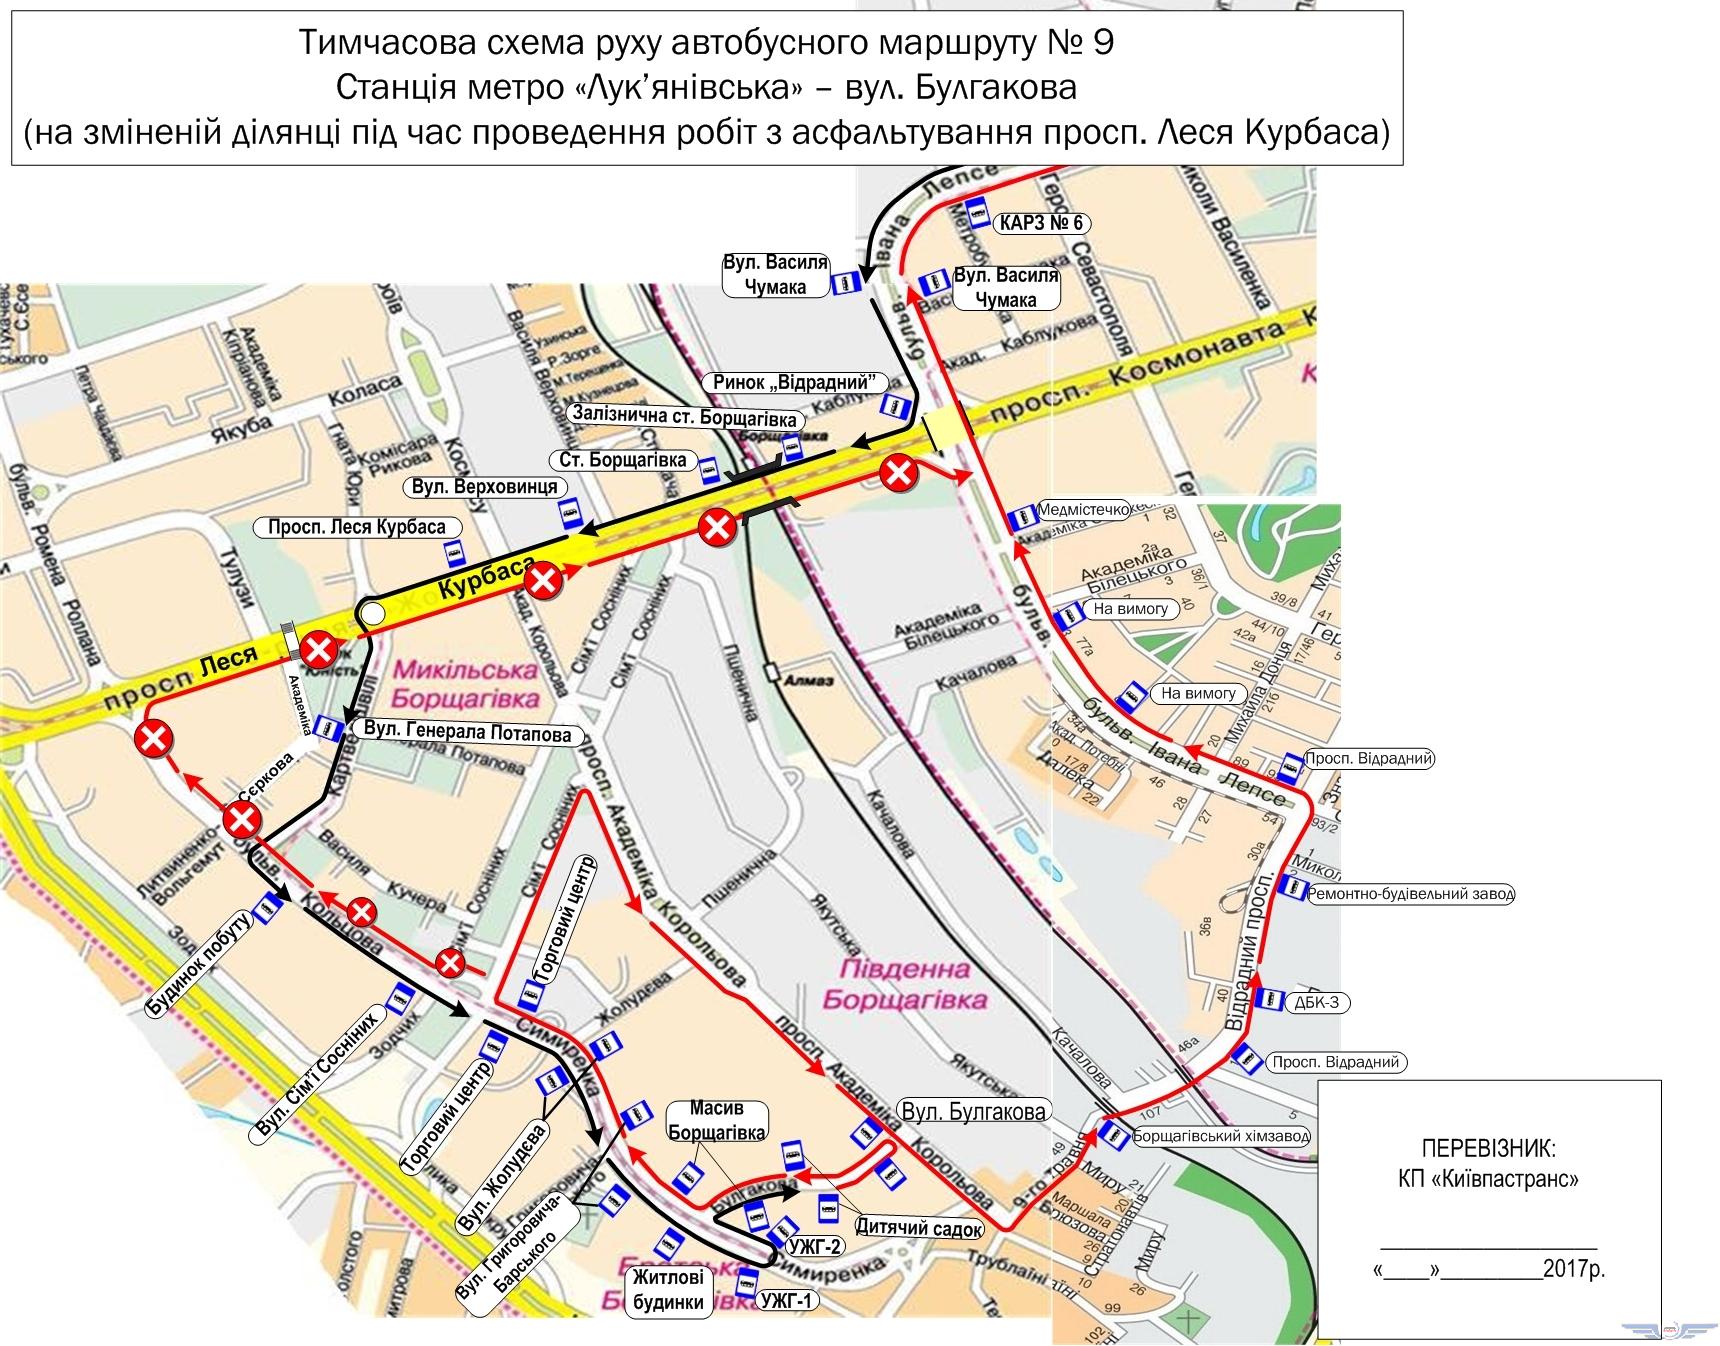 Из-за ремонтов дорог в Киеве отменят 2 троллейбуса, а 3 автобуса пустят по другим маршрутам (схемы)